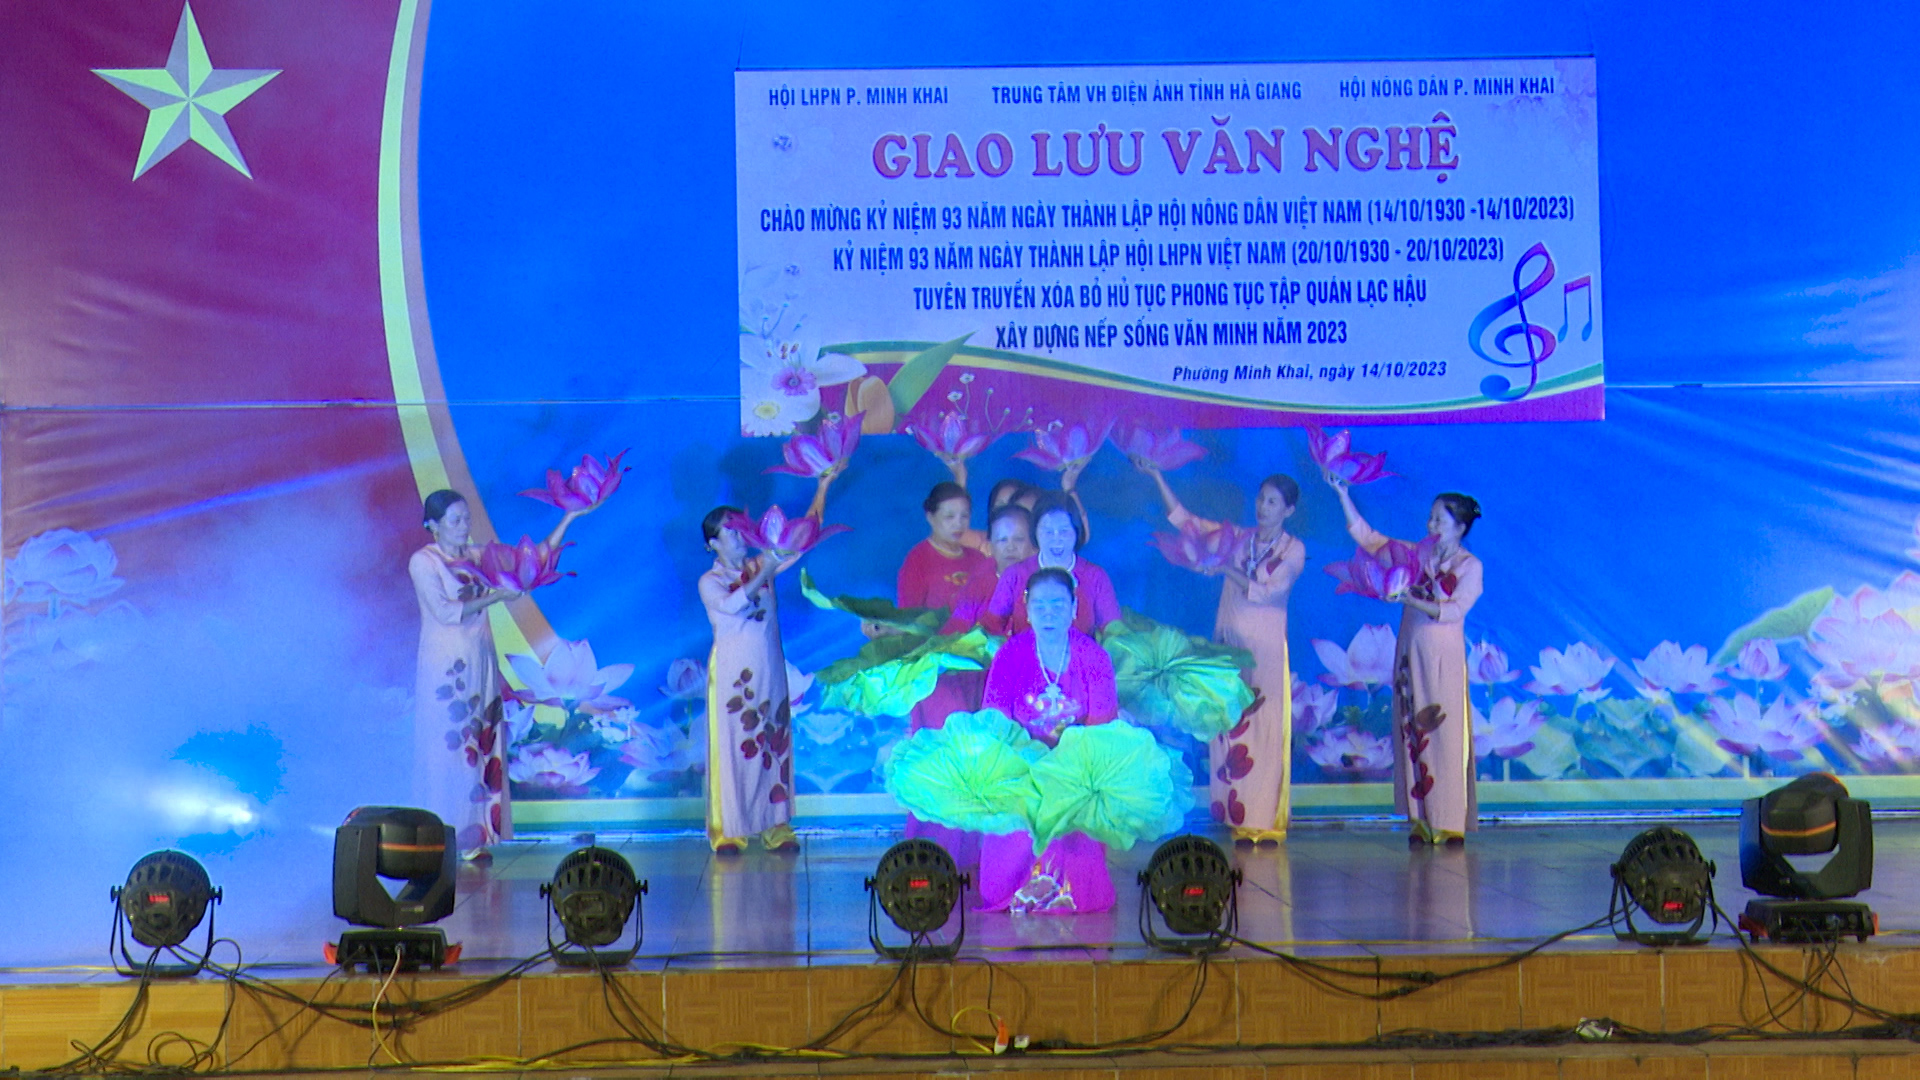 Phường Minh Khai giao lưu văn nghệ chào mừng Ngày Phụ nữ Việt Nam 20-10